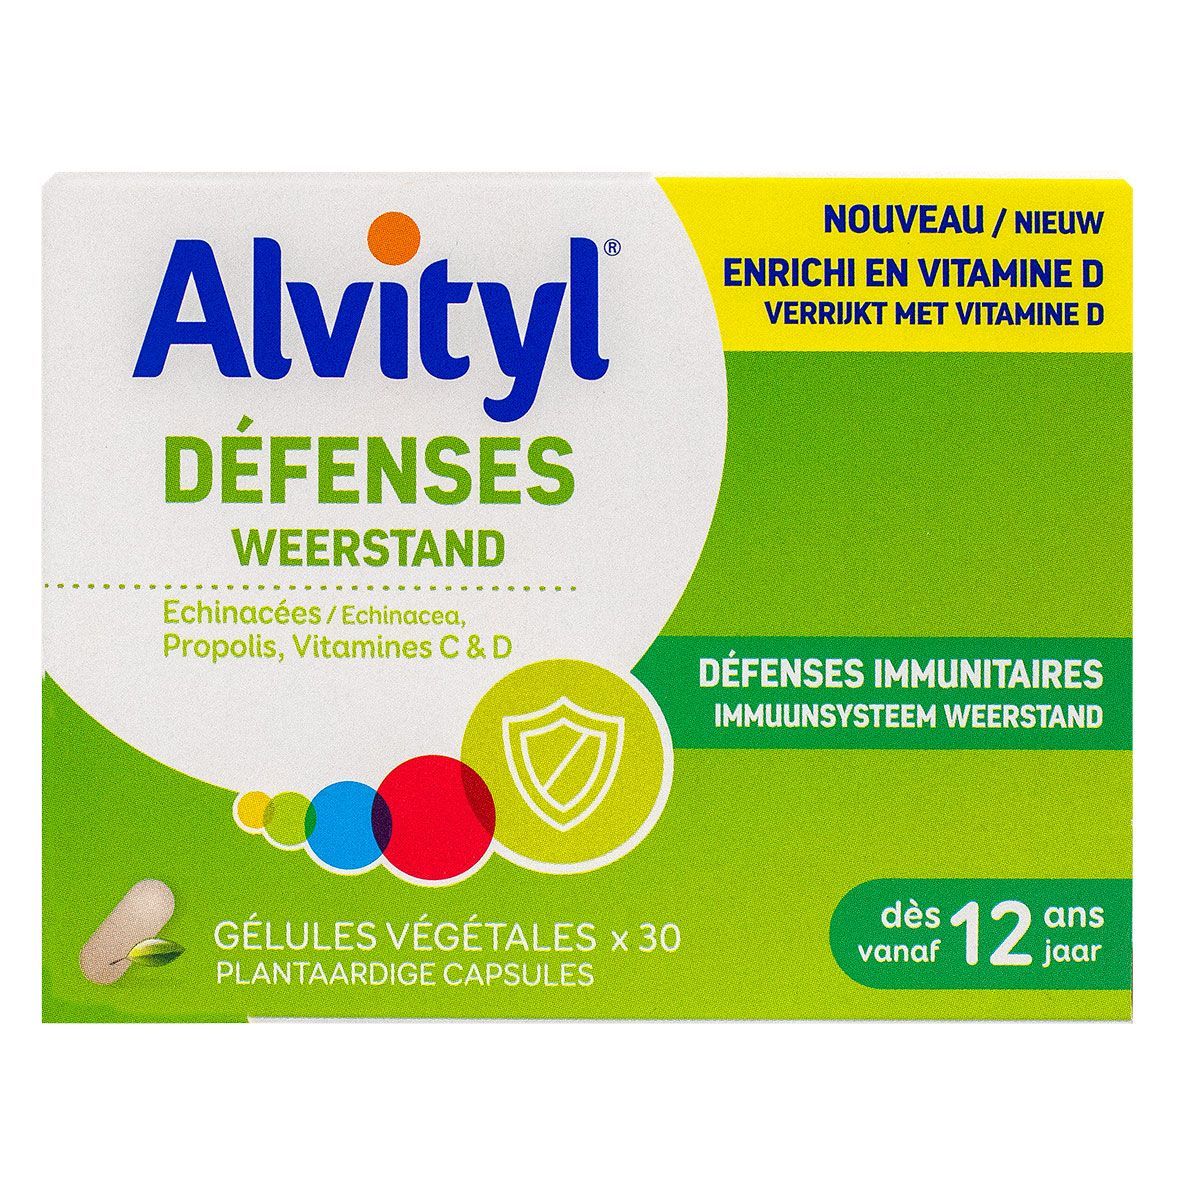 ALVITYL VITALITE 50+ 30 Comprimés Effervescents - Energie Physique et  Mentale, Immunité, Capital Osseux, Vision